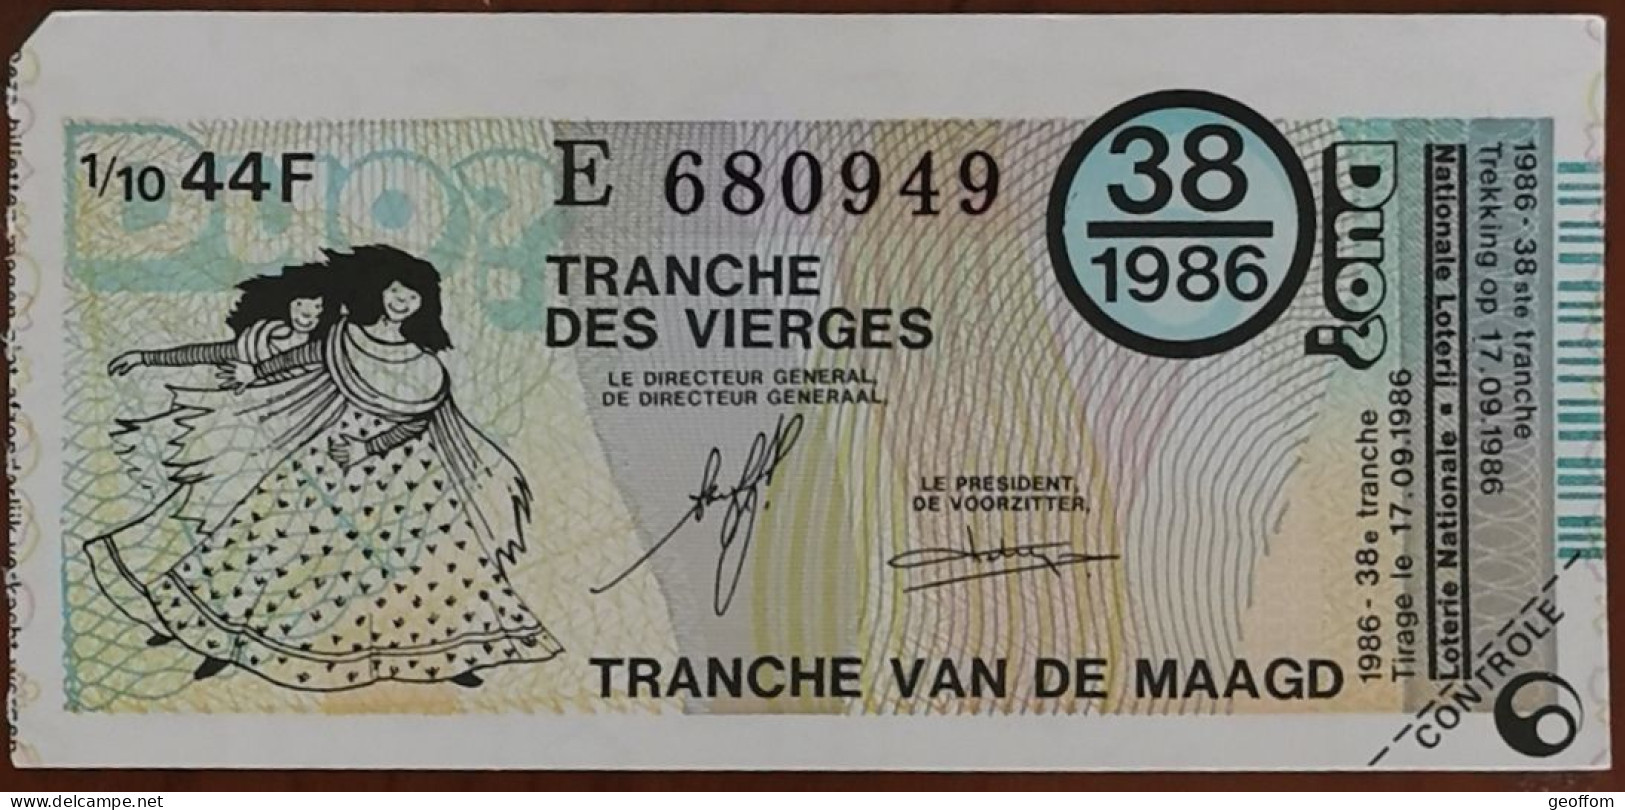 Billet De Loterie Nationale Belgique 1986 38e Tranche Des Vierges - 17-9-1986 - Billetes De Lotería